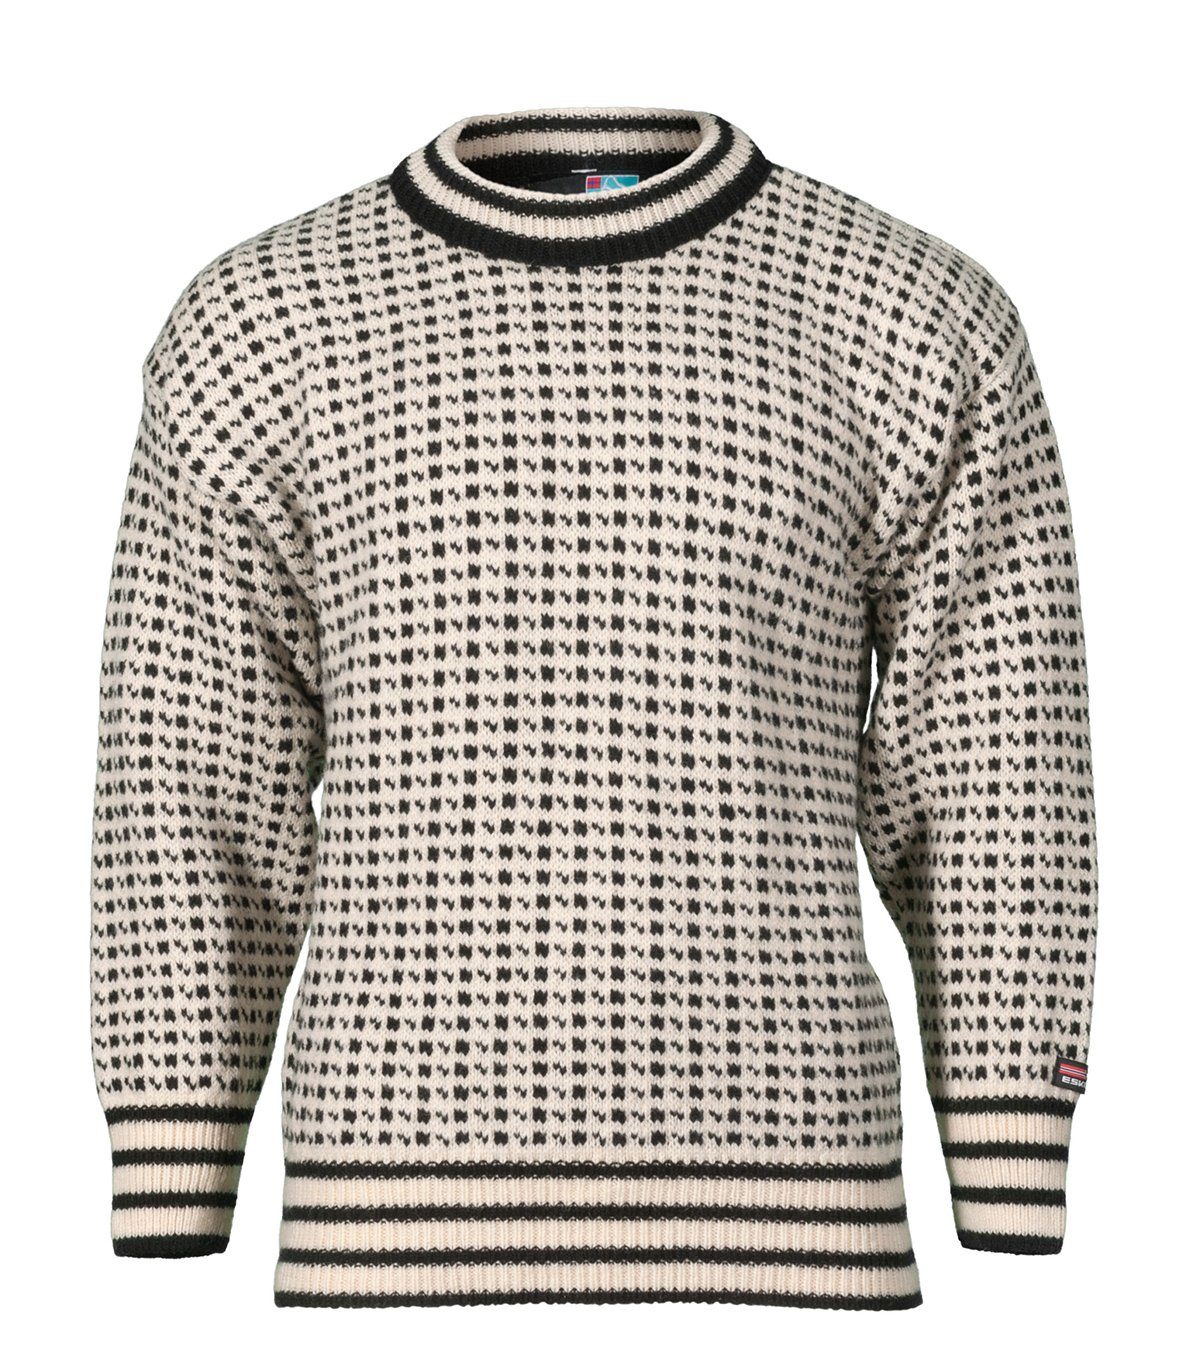 Bråtens Strickpullover Islender Sweater Pullover - weiß-schwarz - Herren Damen Wollpullover - aus 100% norwegischer Wolle